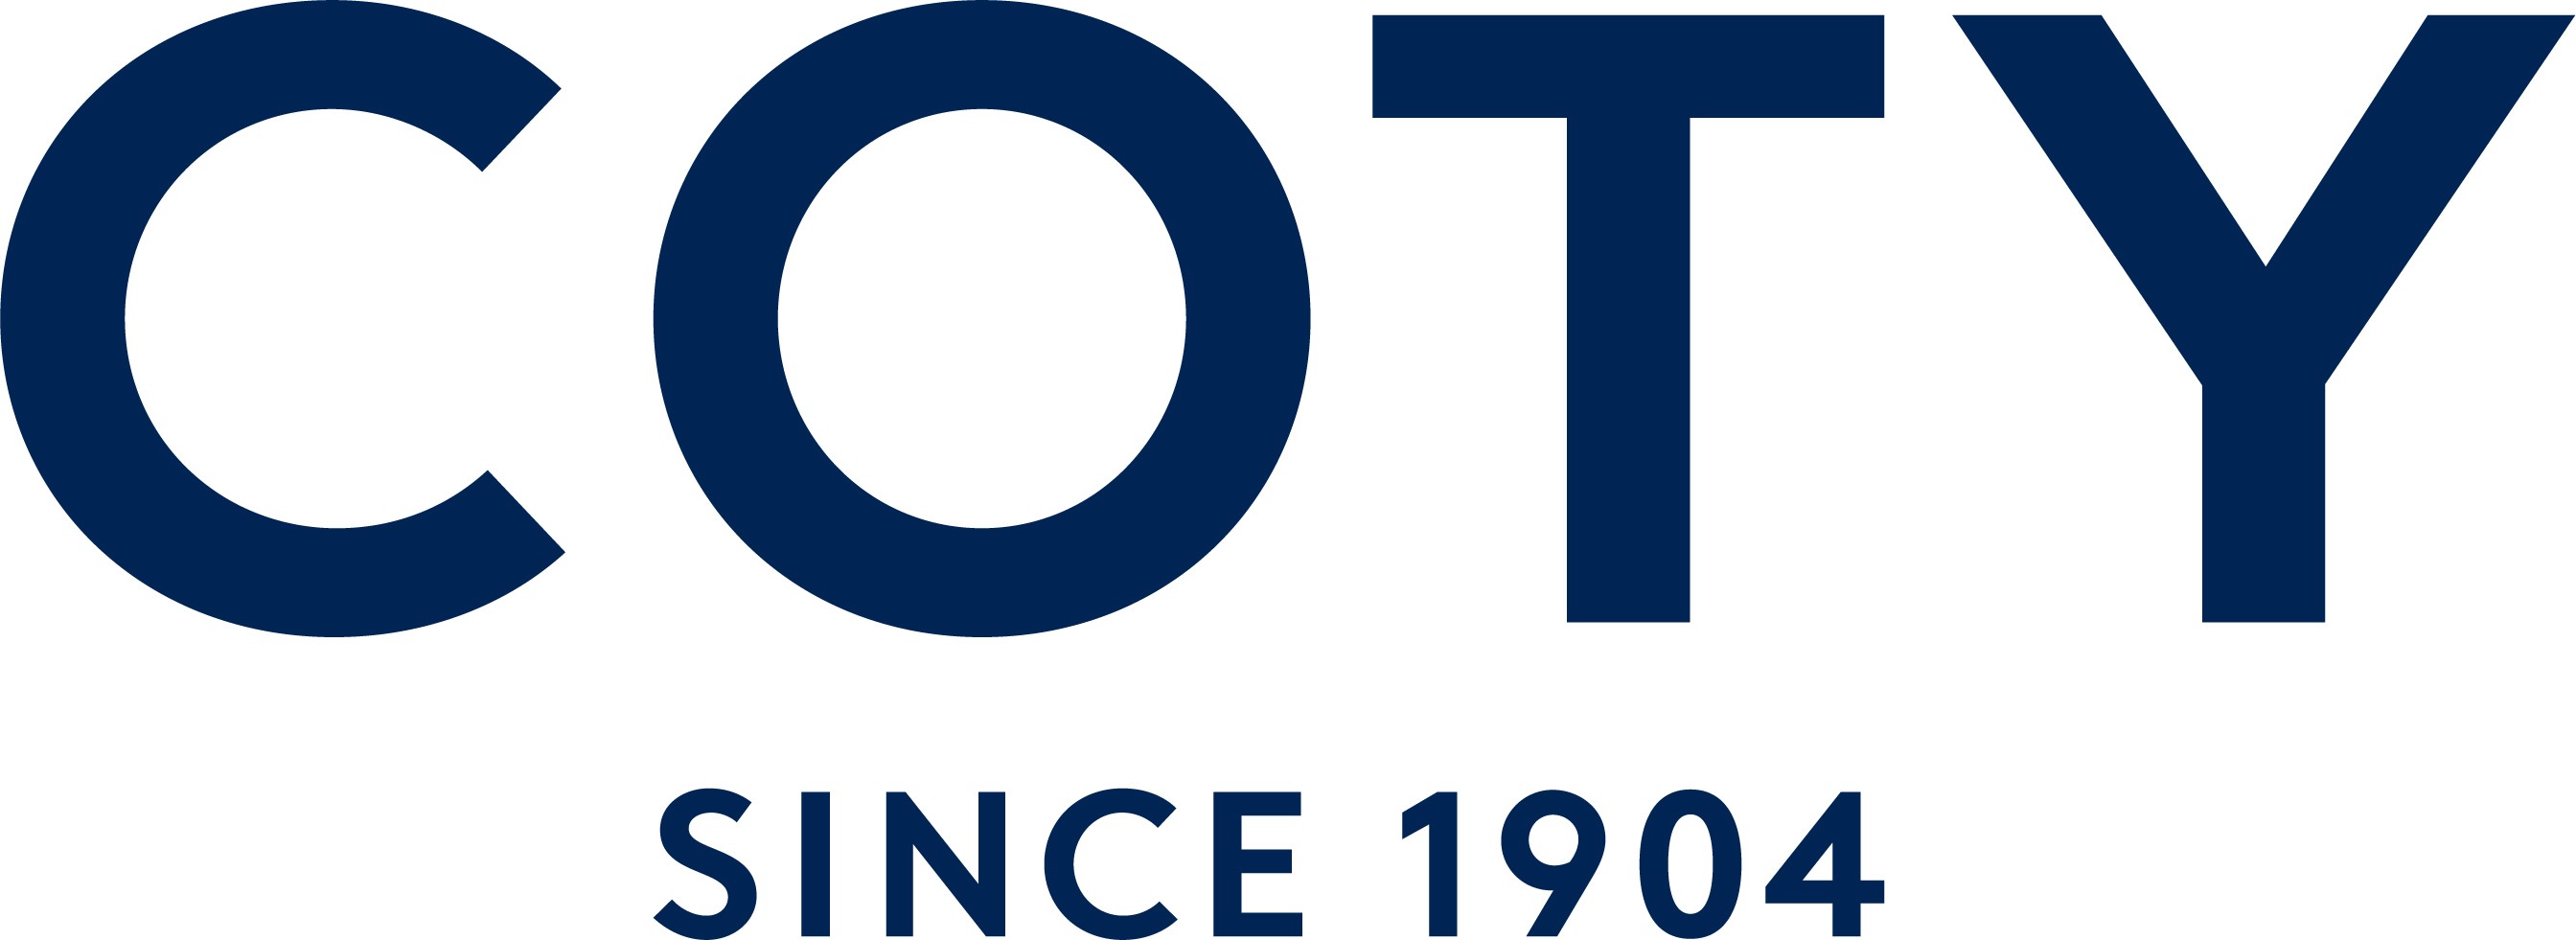 Coty Logo 2020.jpg